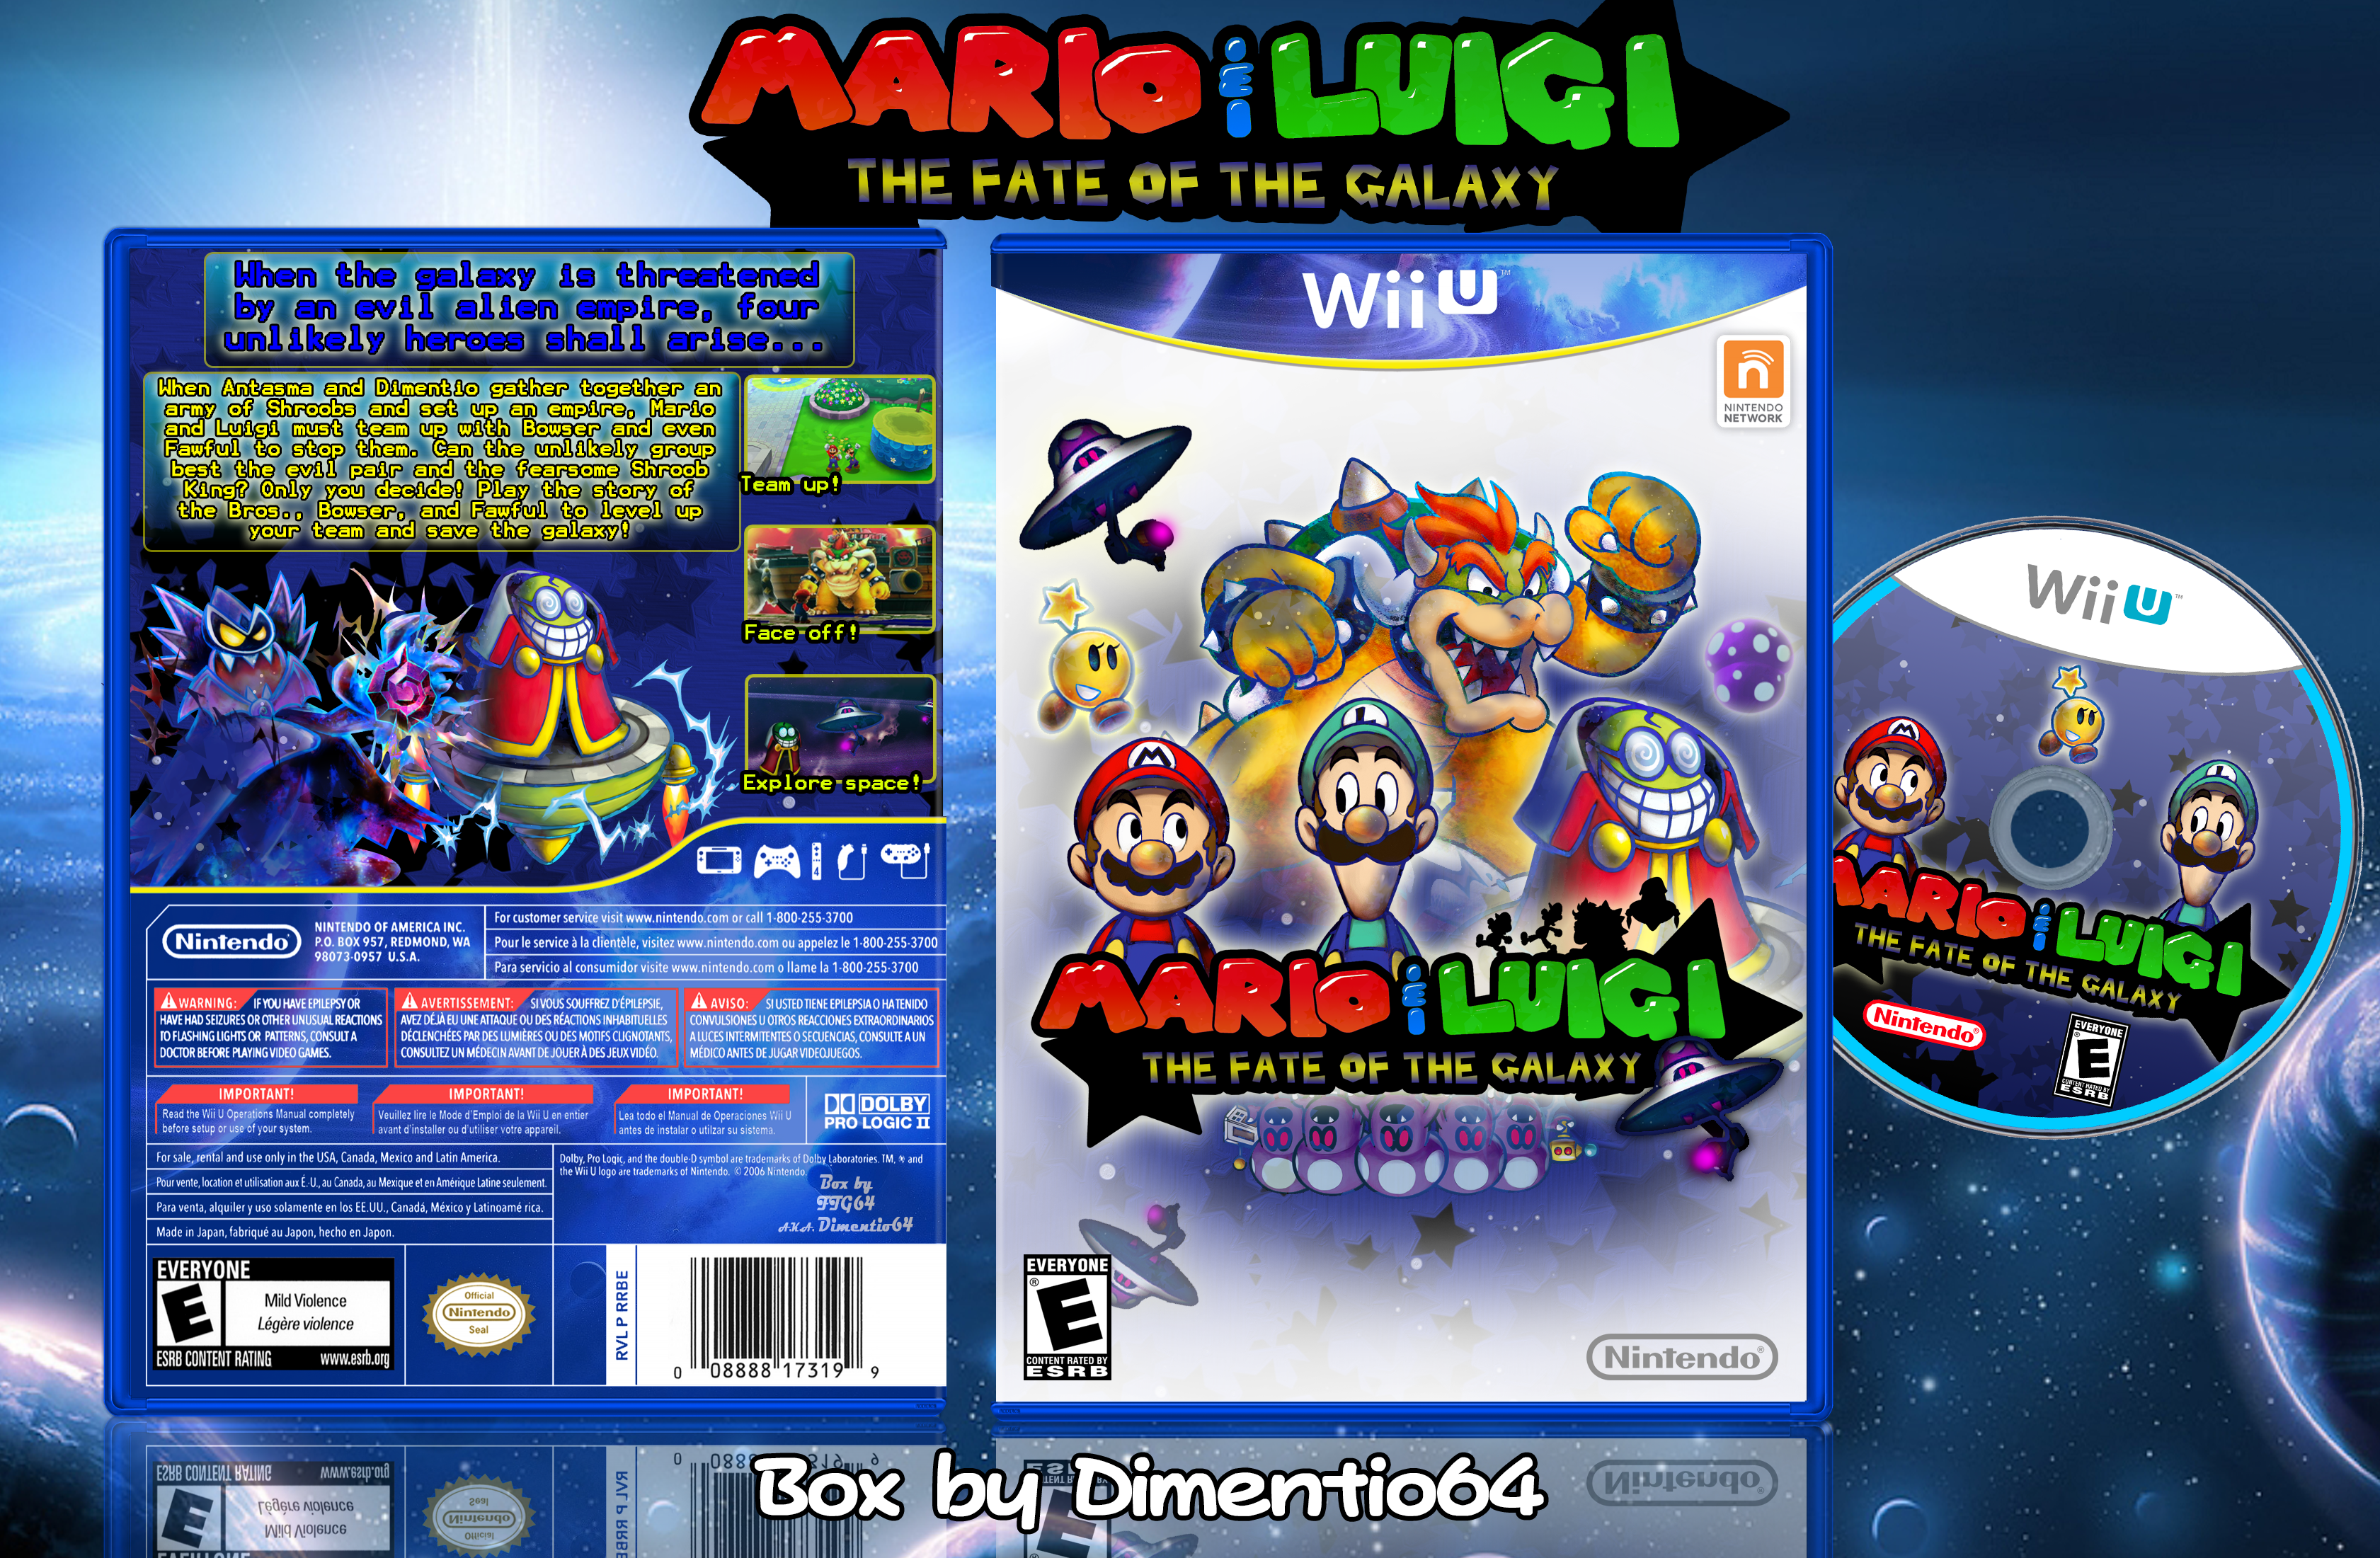 Mario & Luigi: The Fate of the Galaxy box cover